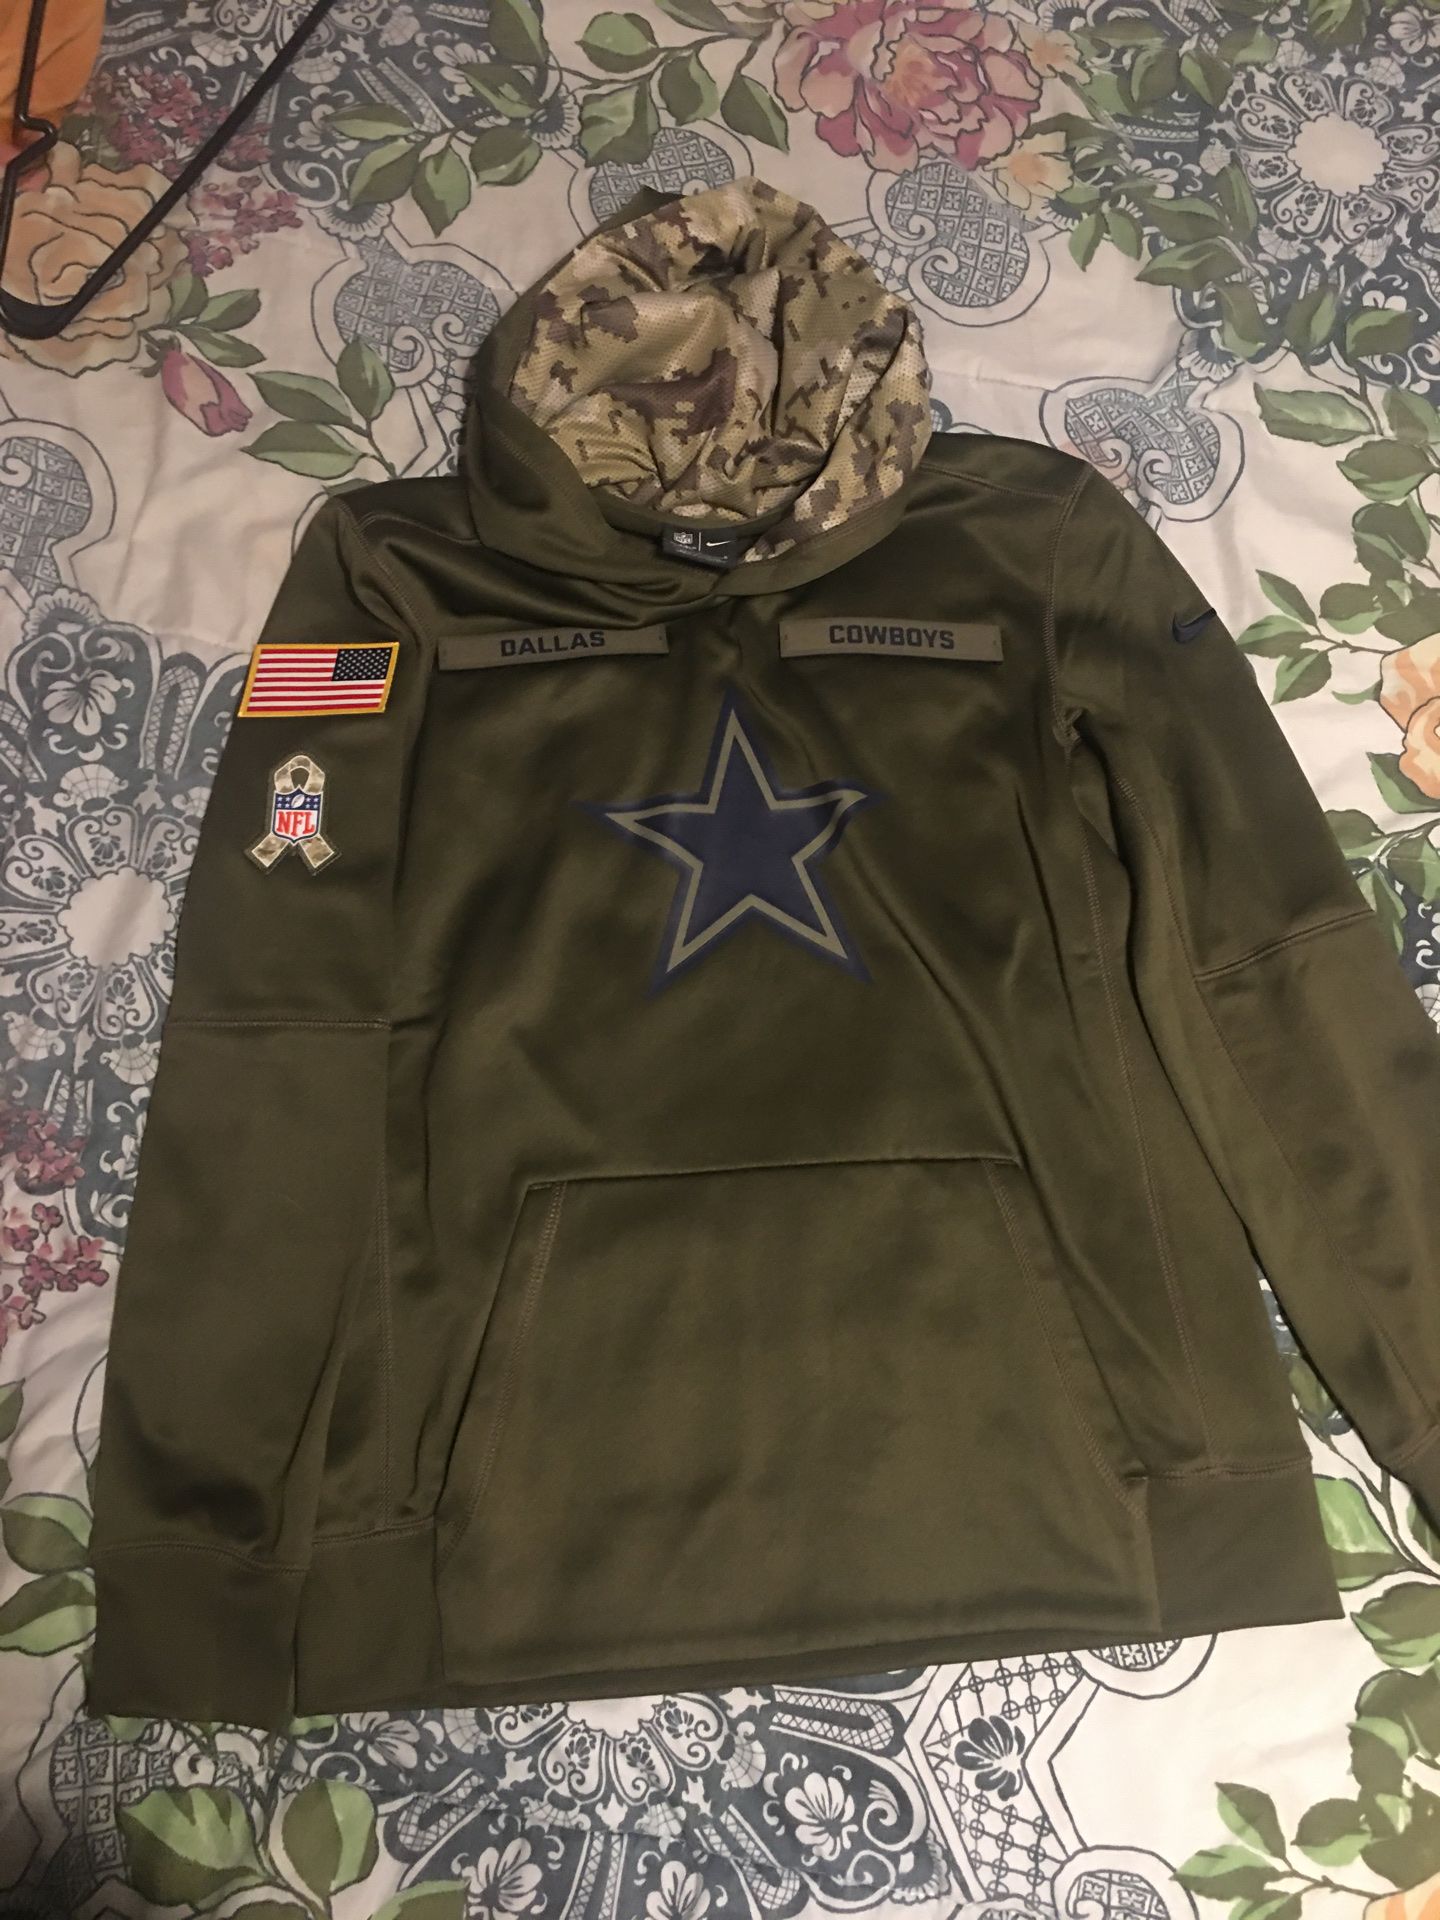 Cowboys Nike hoodie